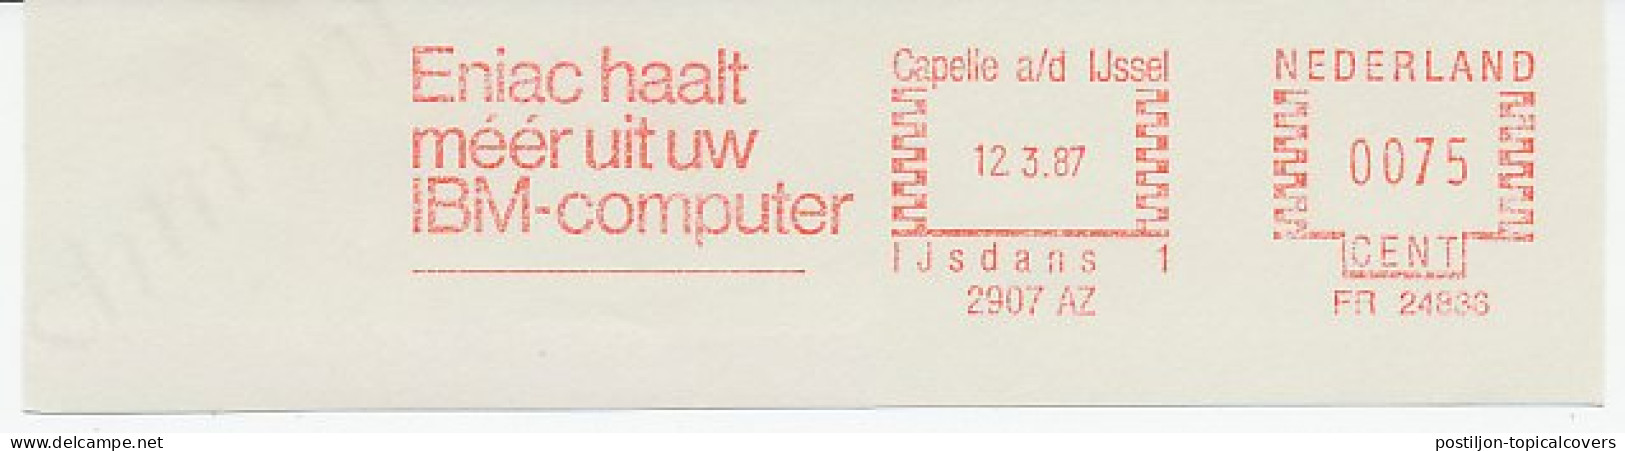 Meter Cut Netherlands 1987 Computer - IBM - Eniac - Informatique